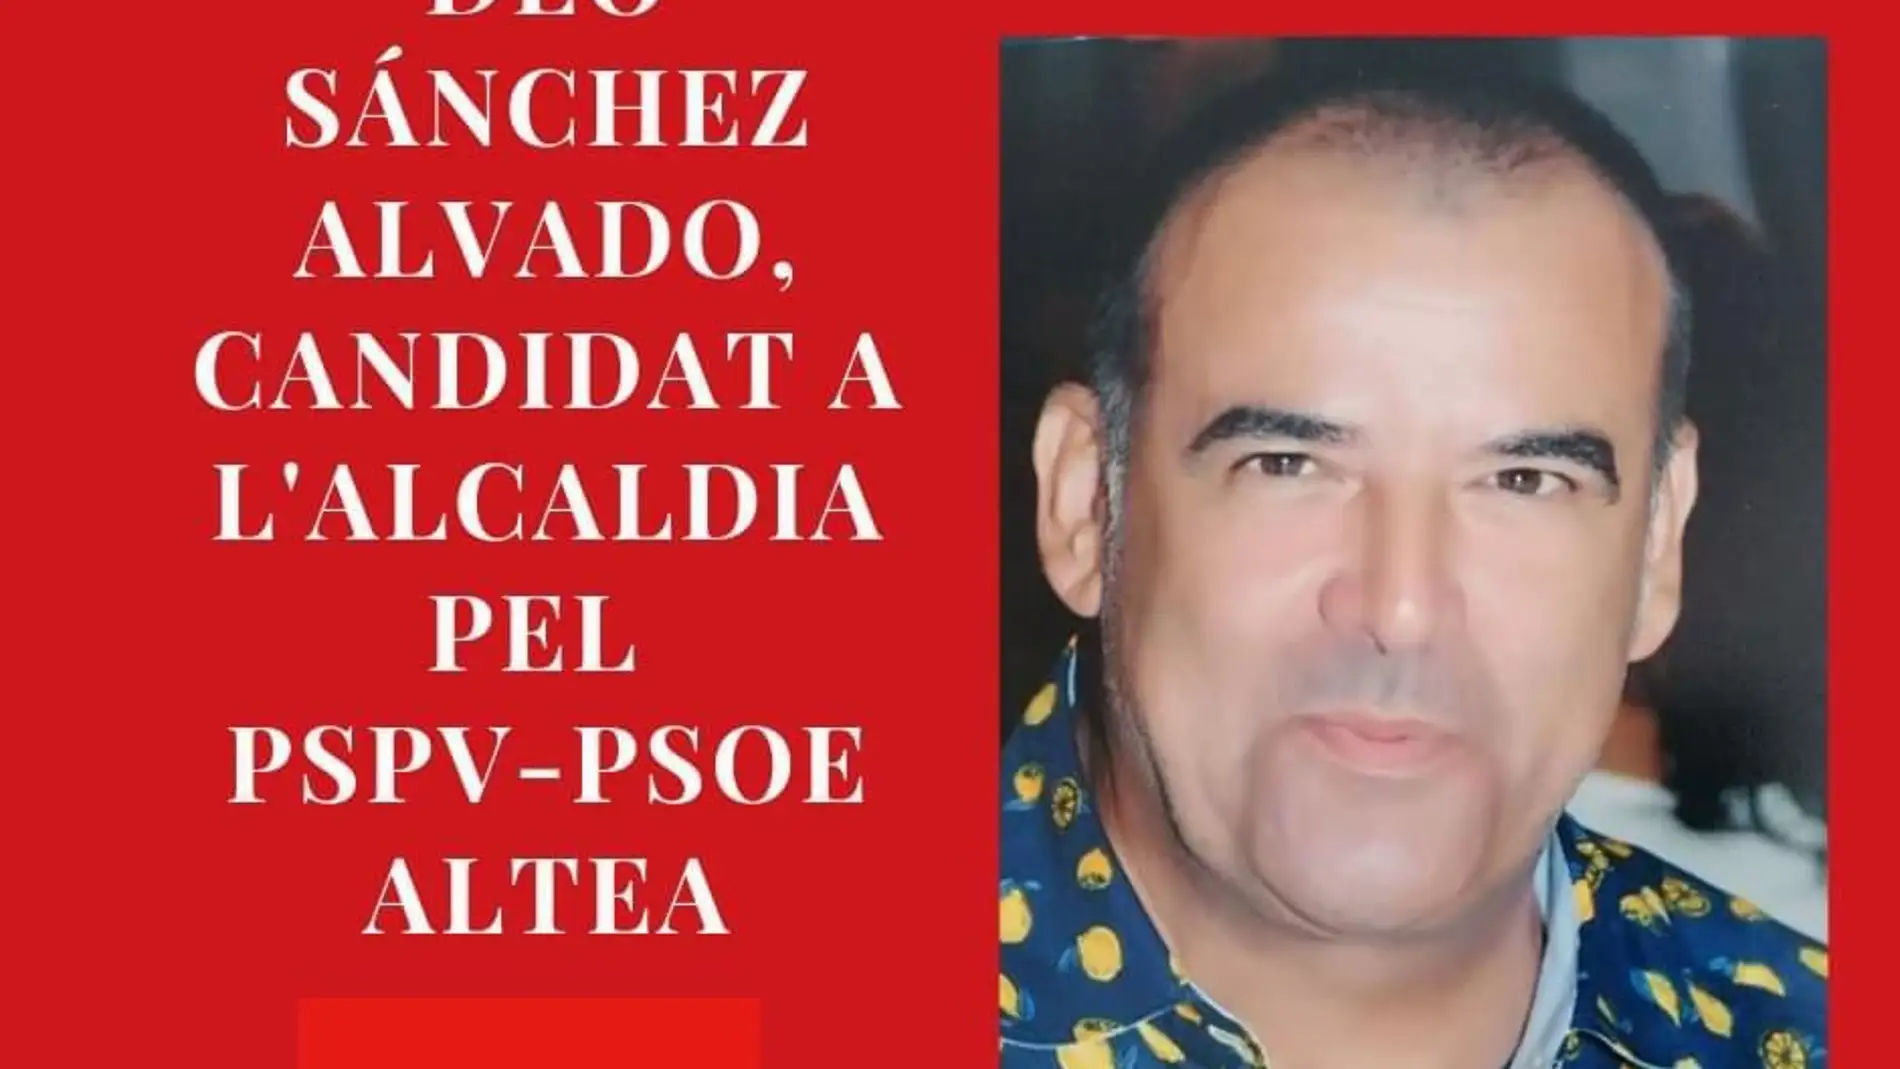 El Partido Socialista de Altea presenta a Deo Sánchez como candidato a la alcaldía